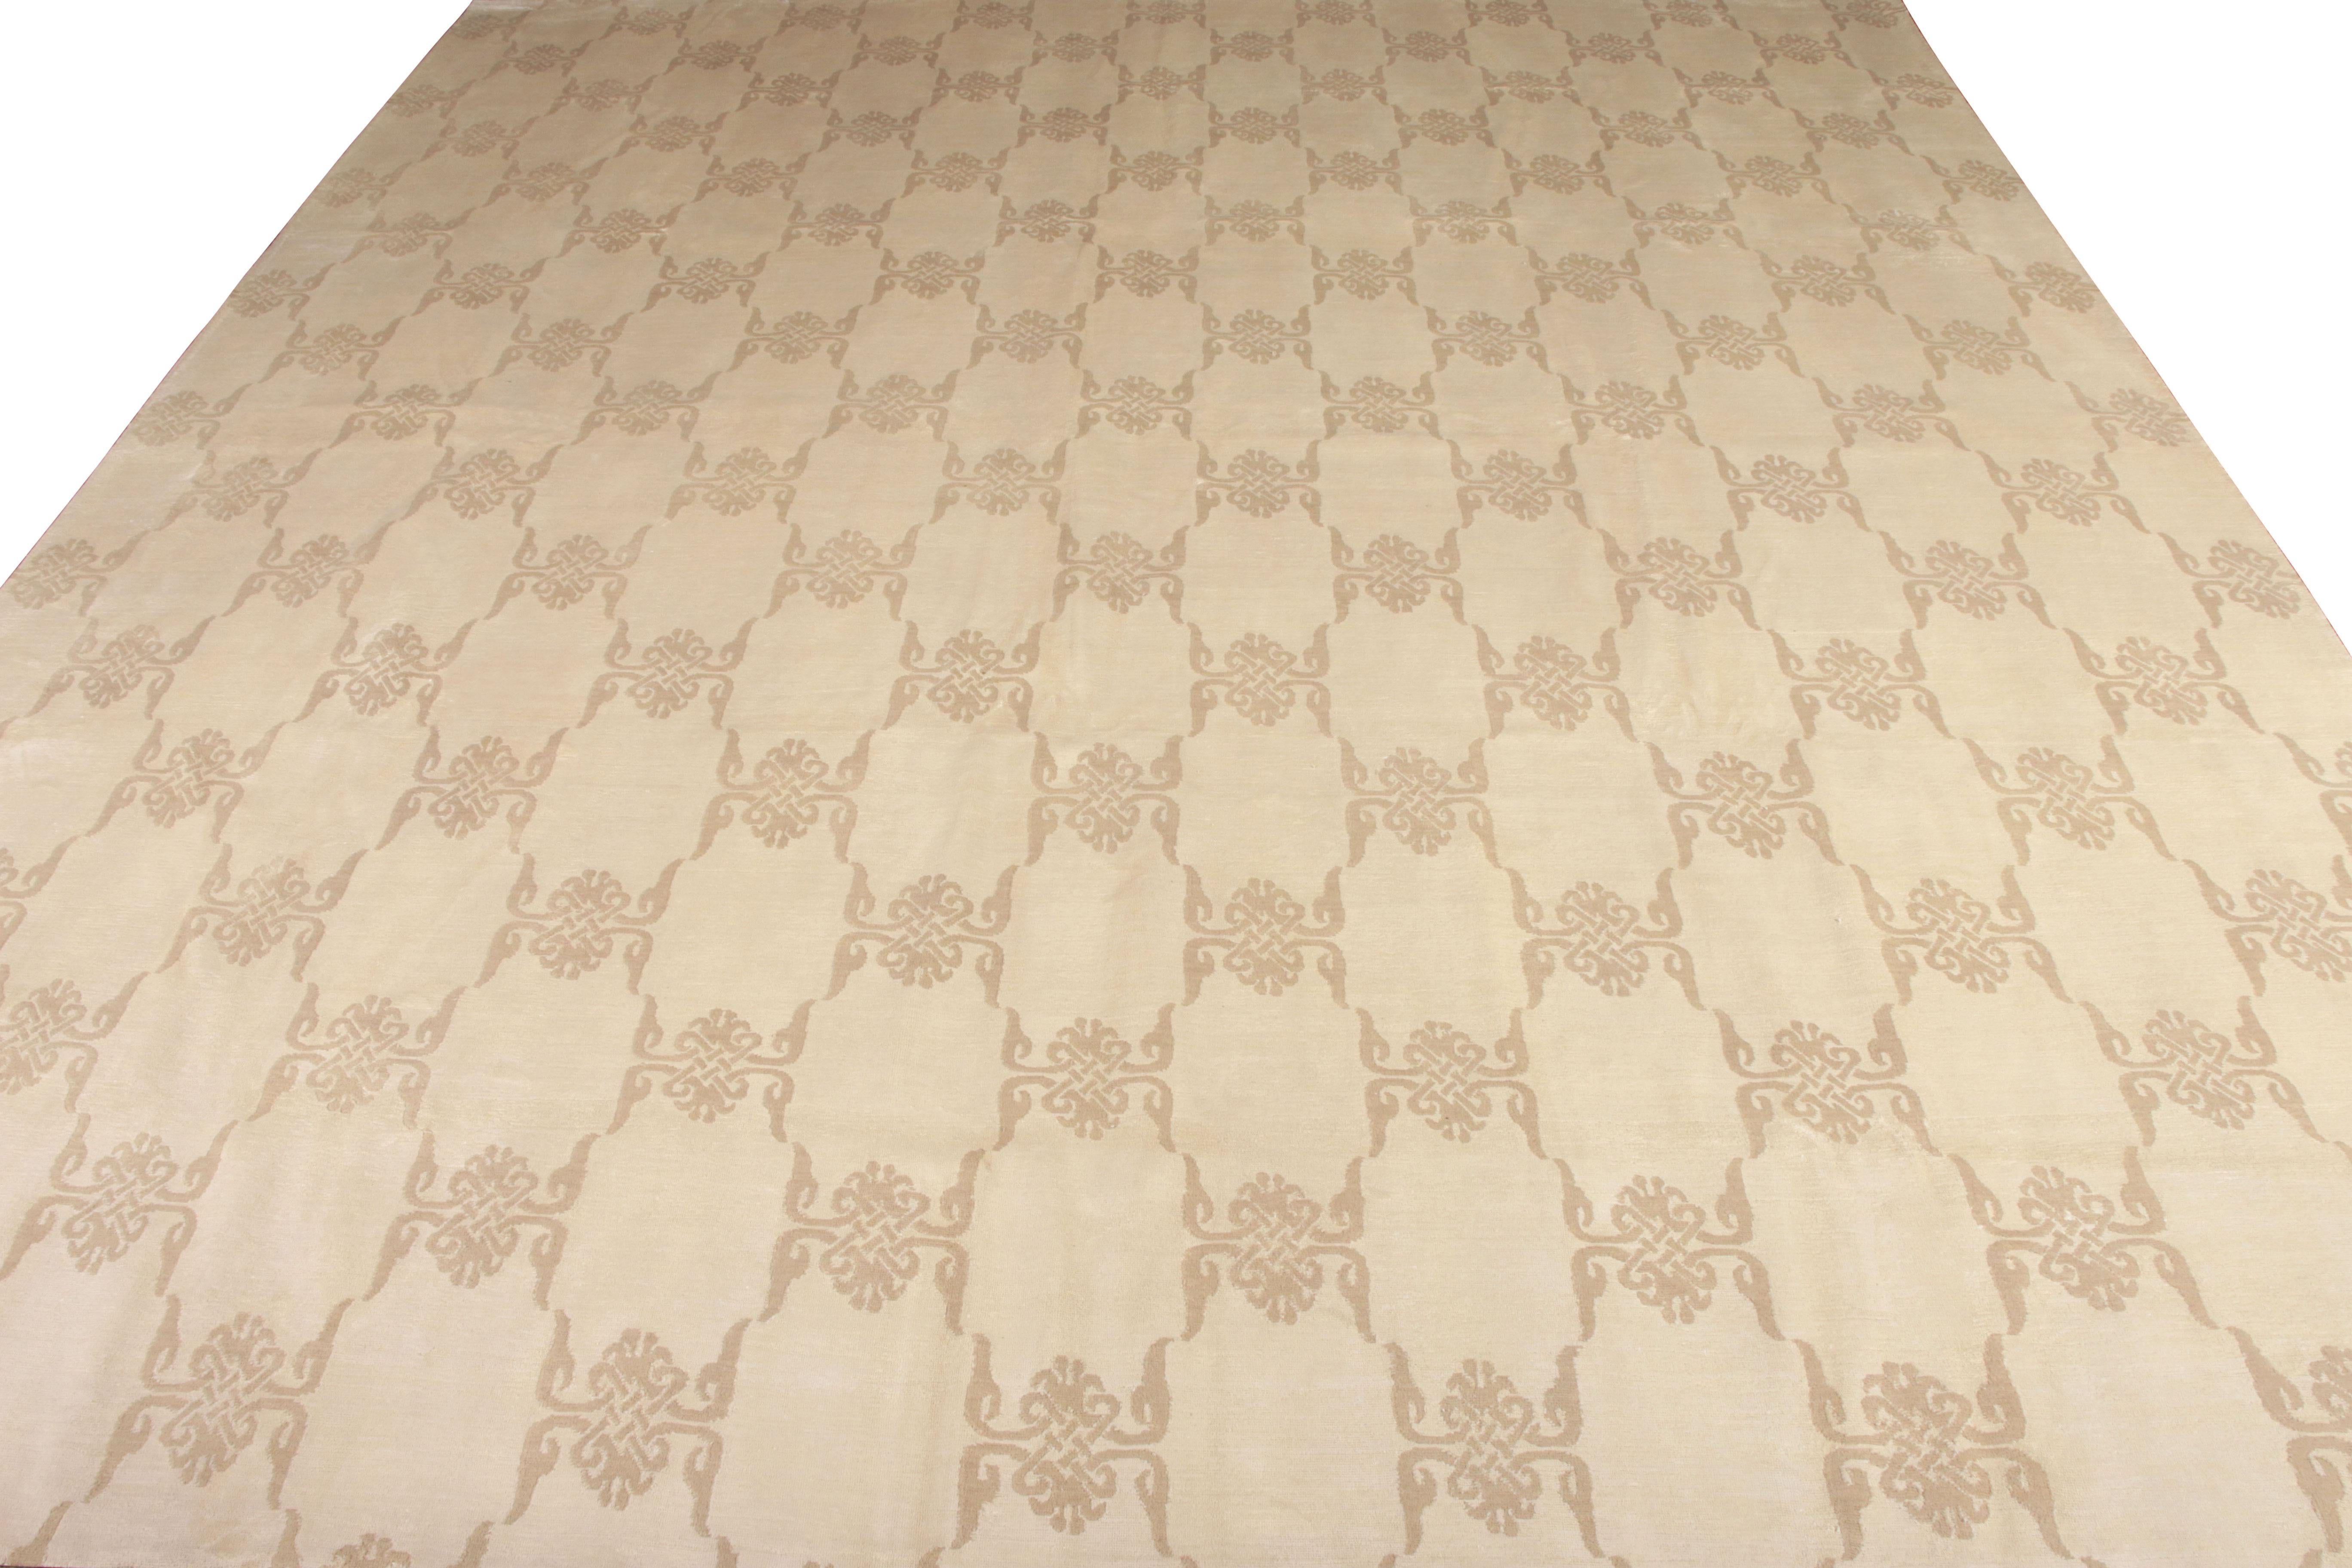 Rug & Kilim präsentiert diesen handgeknüpften Seidenteppich aus der venezianischen Auswahl der European Collection. Der Teppich im anmutigen Format 13 x 15 inspiriert sich an der Ästhetik der Jahrhundertmitte und verbindet sie geschmackvoll zu einem